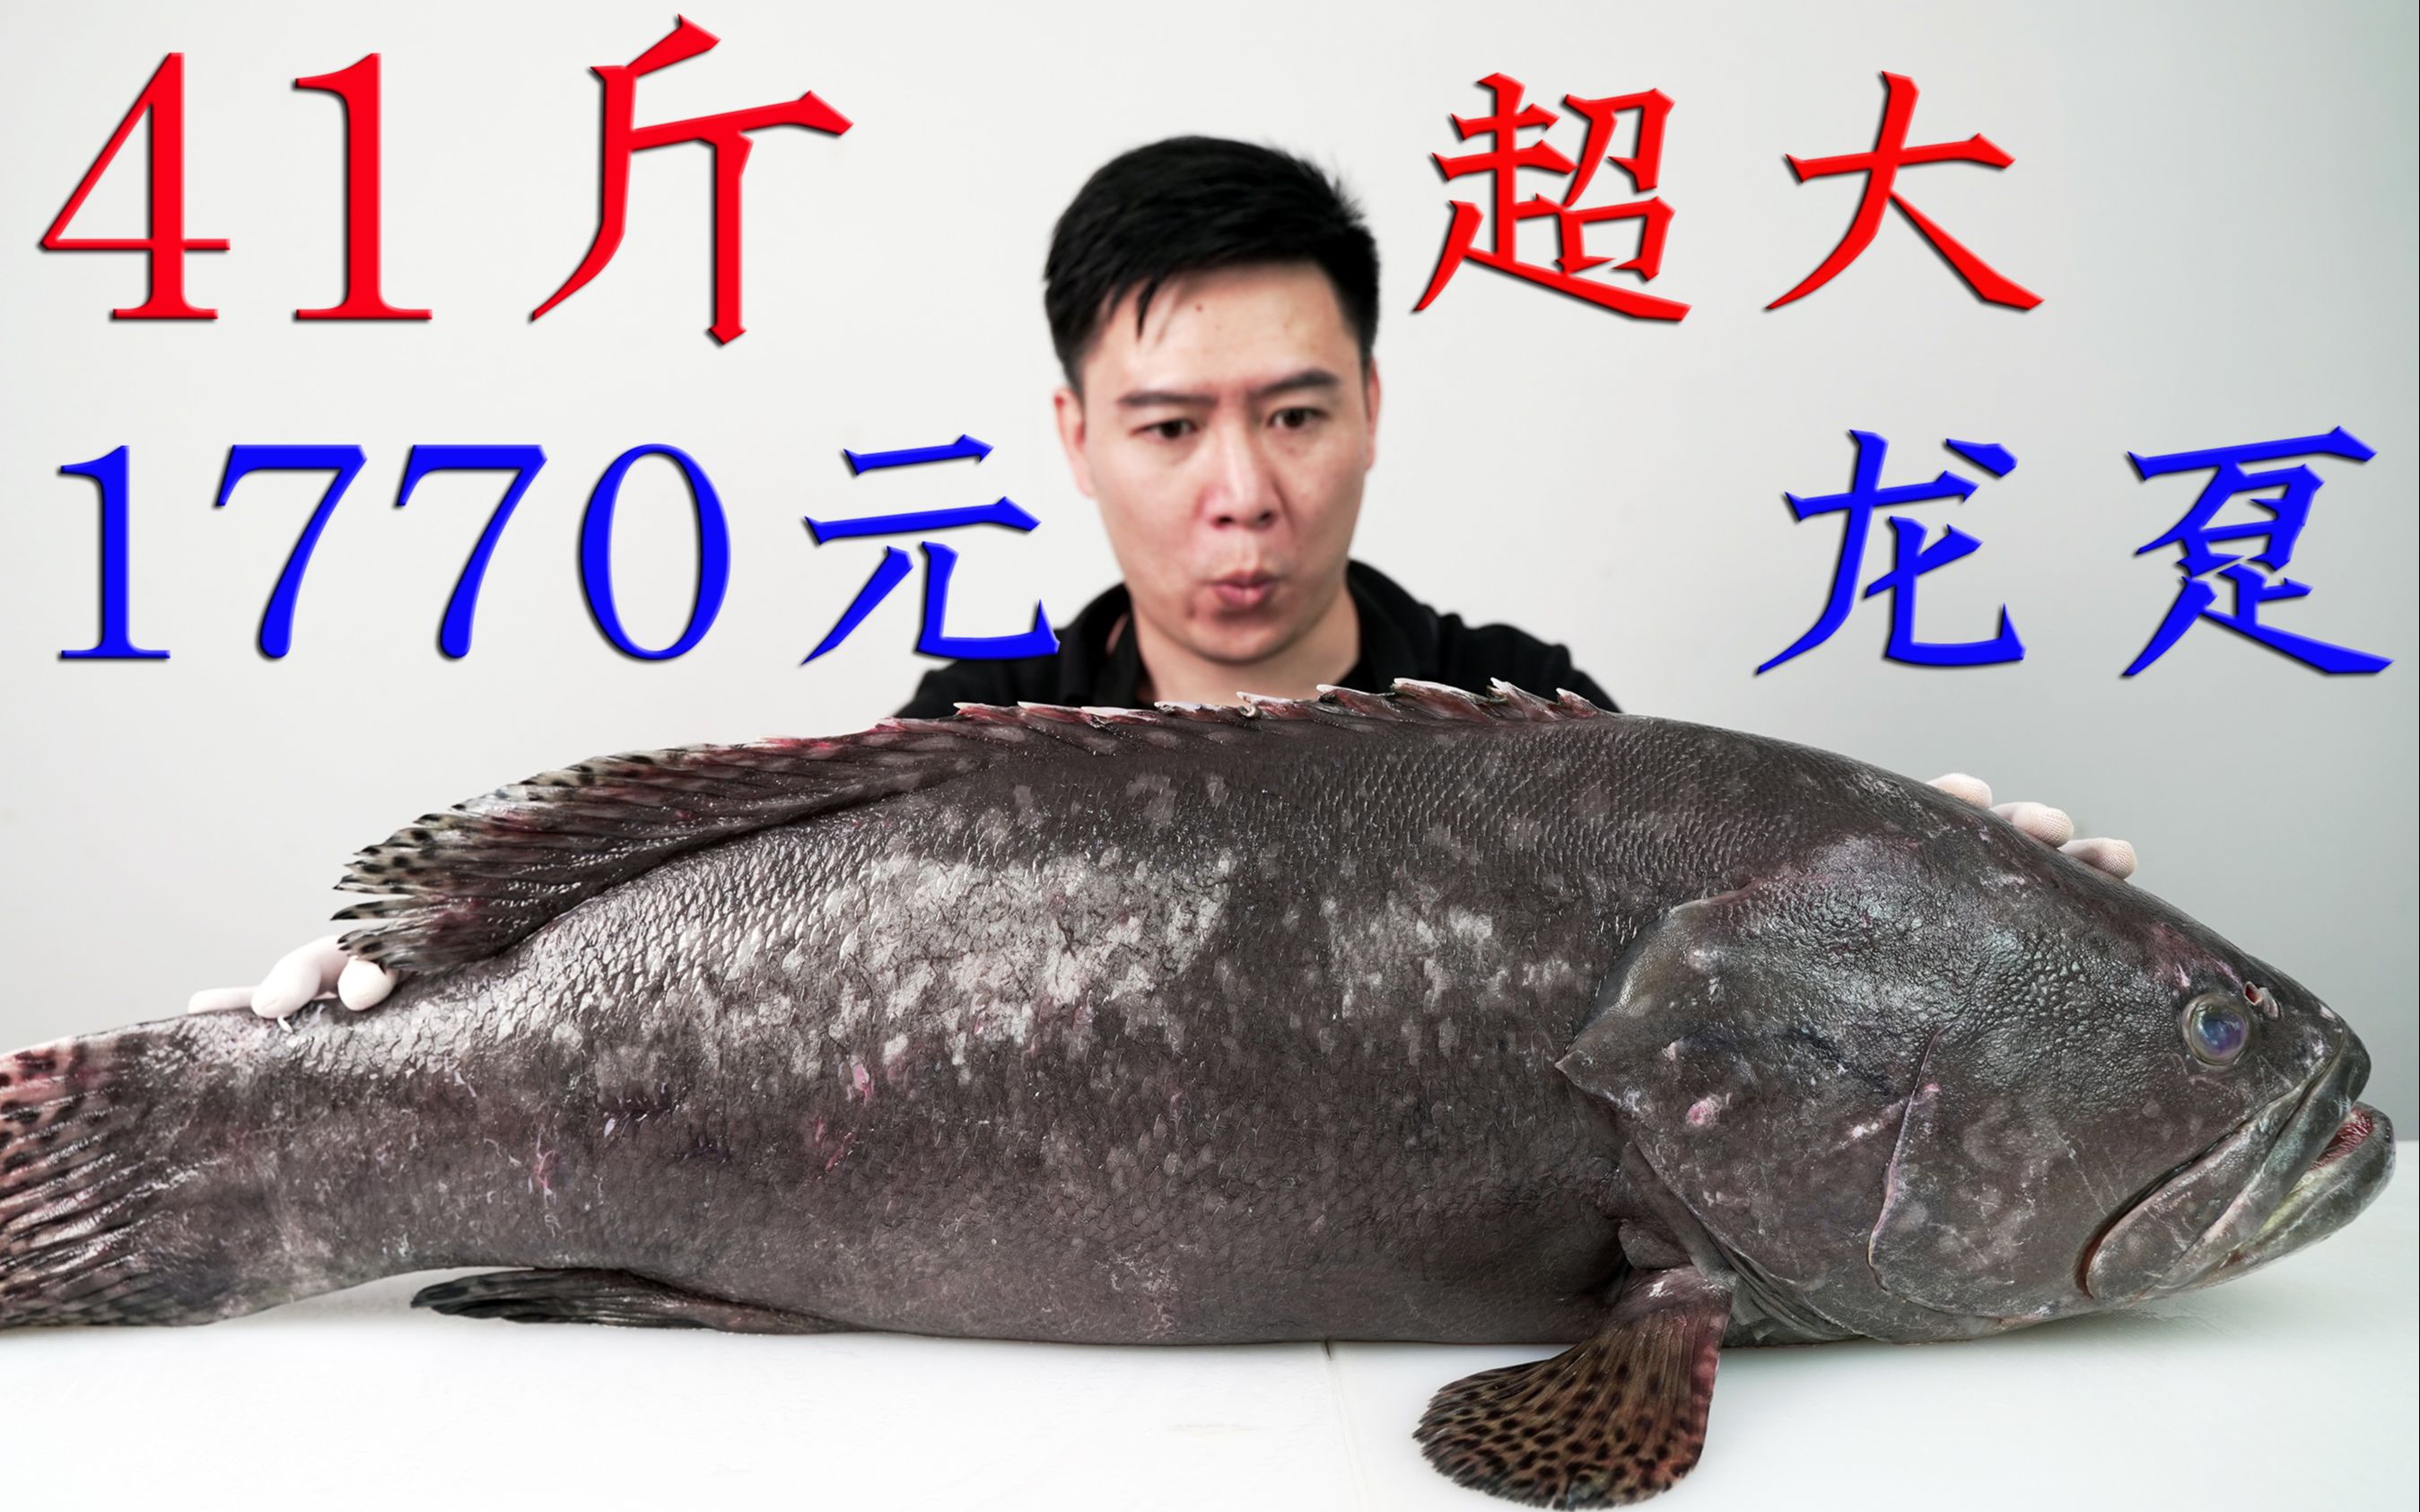 1770买一条41斤超大龙趸石斑鱼,搭配超赞的做法,又赚大了